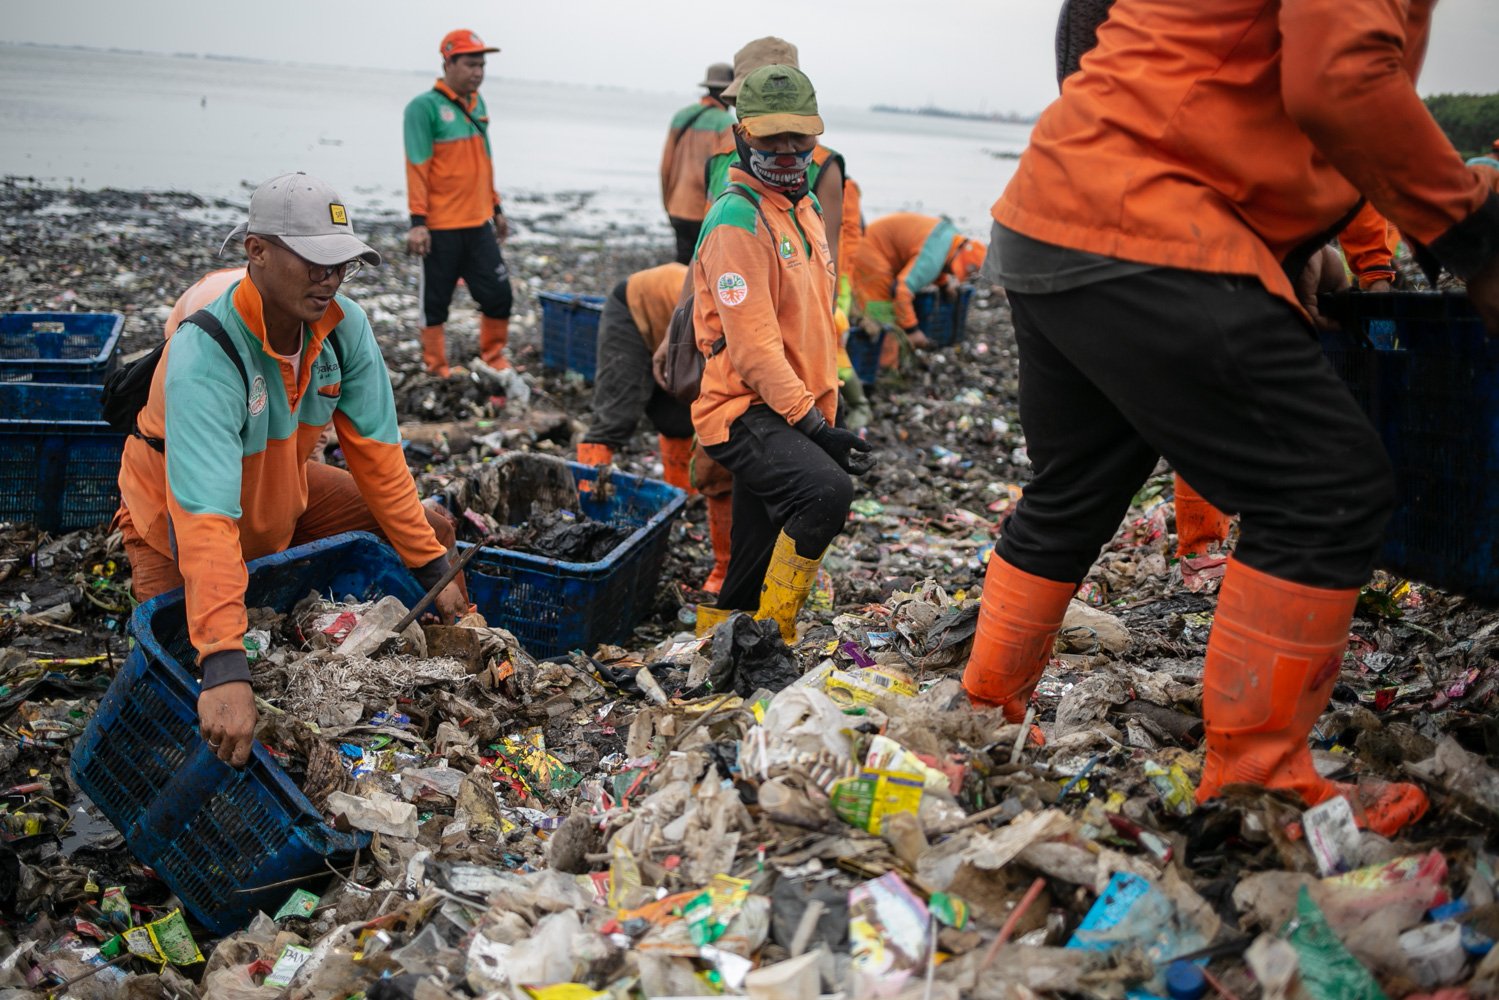 Petugas Penanganan Prasarana dan Sarana Umum (PPSU) mengumpulkan sampah di sekitar Pantai Marunda, Cilincing, Jakarta, Kamis (8/6). Dalam peringatan Hari Laut Internasional kondisi laut Jakarta masih dipenuhi sampah. Menurut KLHK Indonesia menghasilkan lebih dari 19 juta ton sampah sepanjang 2022, 18 persennya sampah plastik yang sebagian ngalir ke laut.